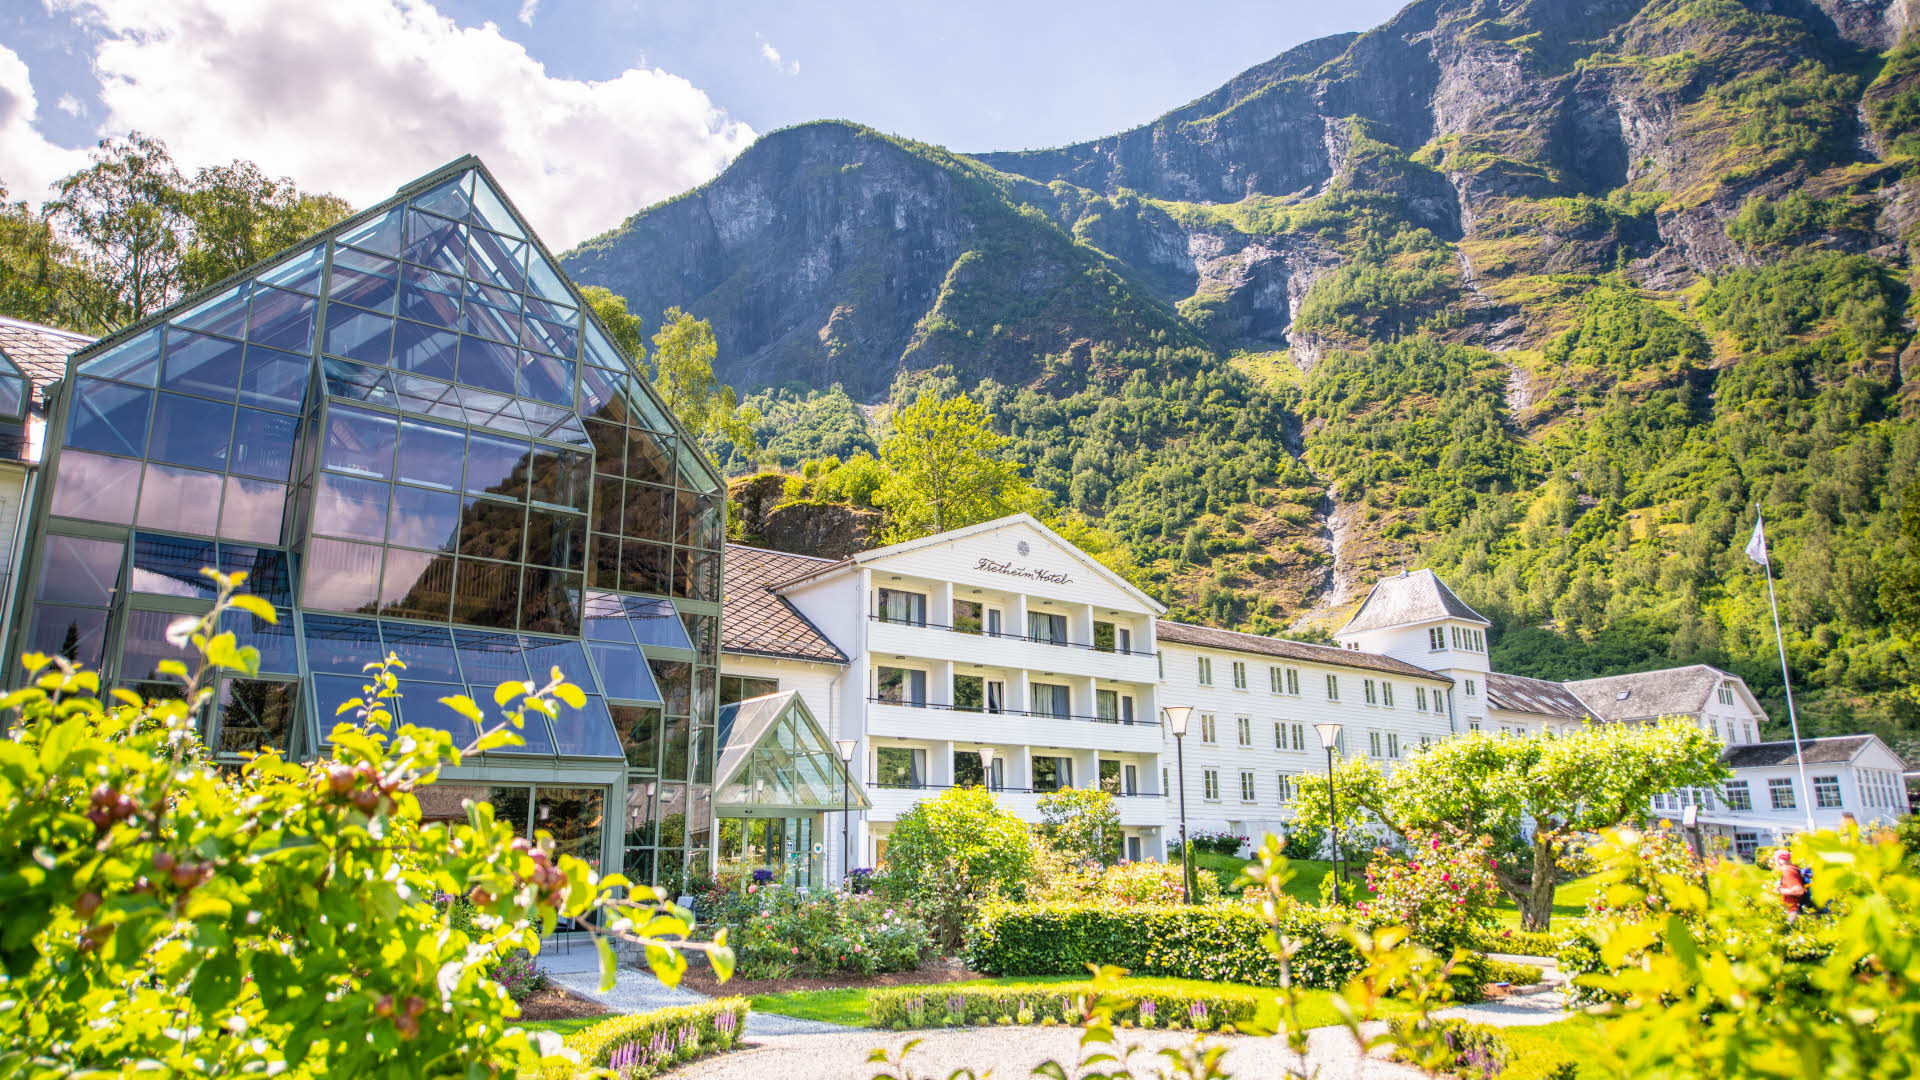 Le Fretheim Hotel en face des montagnes escarpées, vues depuis le jardin qui apparaît au premier plan.